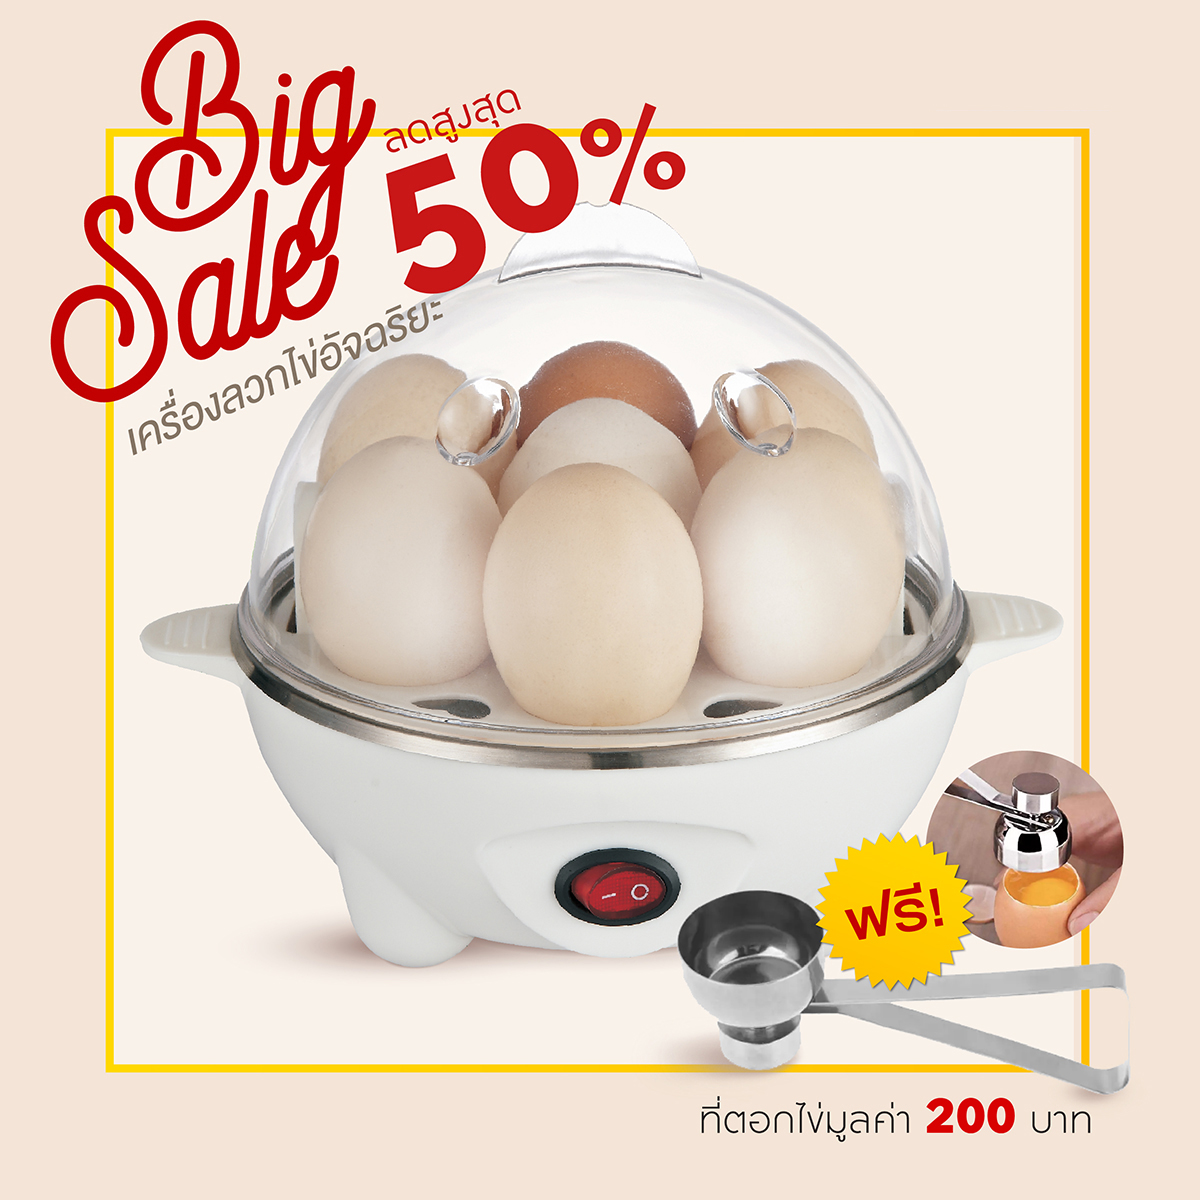 【ร้านค้าที่ได้รับอนุญาตอย่างแท้จริง พร้อมส่ง 】เครื่องลวกไข่ iEgg เลือกความสุขได้ ใช้งานสะดวก เสร็จใน 5 นาที ฟรี!! ที่ตอกไข่มูลค่า 200 บาท (เครื่องต้มไข่)